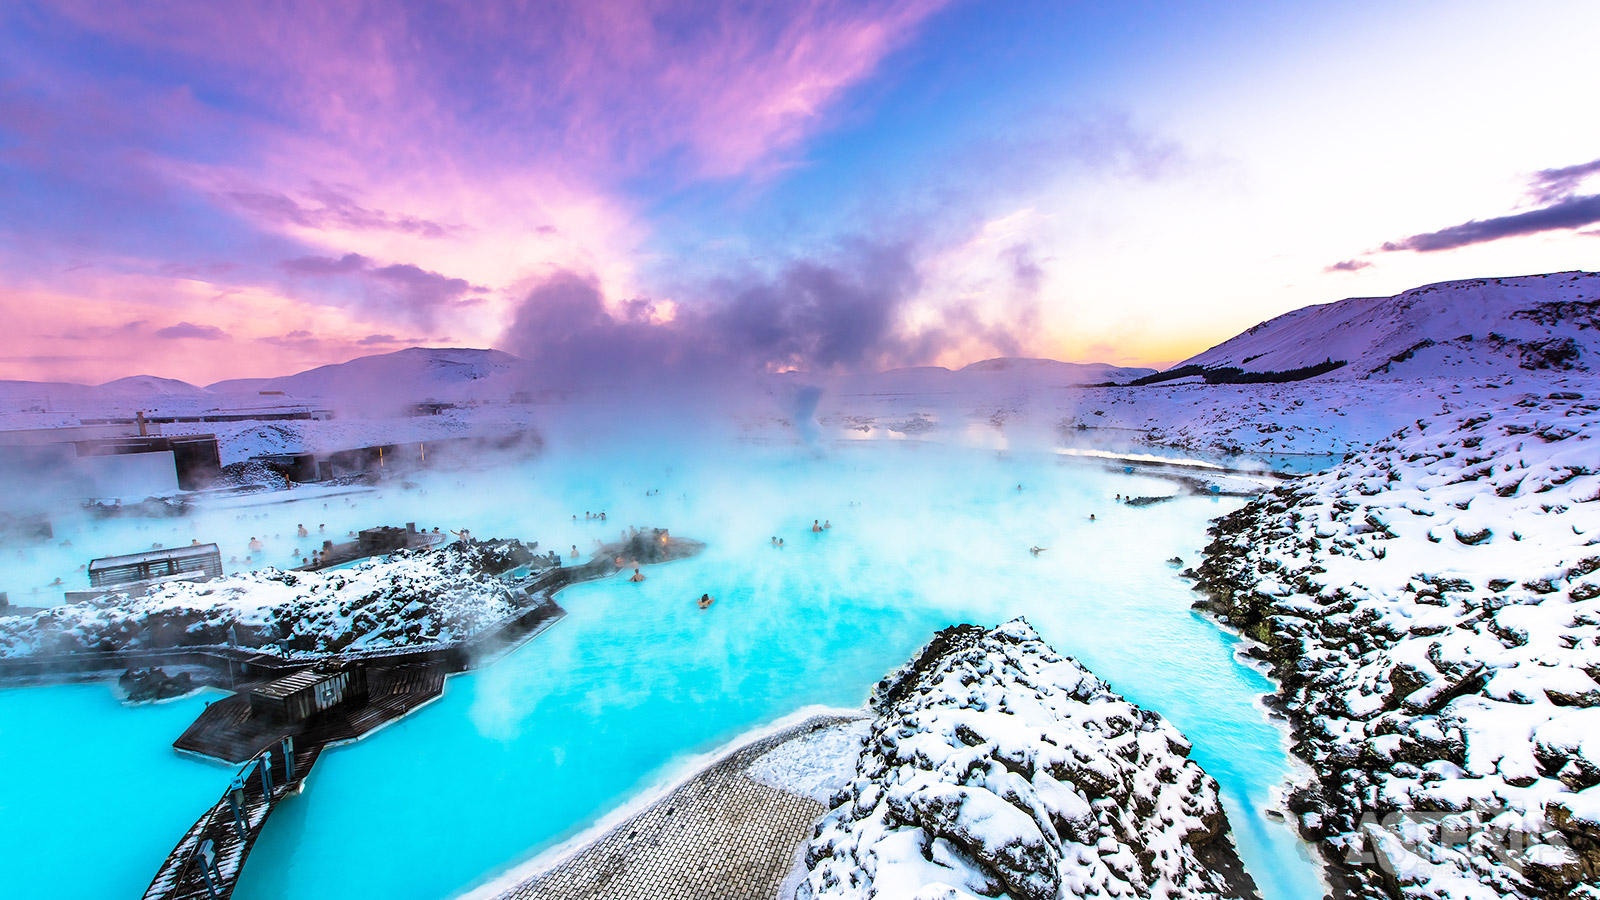 De natuurlijke thermale spa Blue Lagoon is omgeven door lavalandschappen en stranden met zwart zand